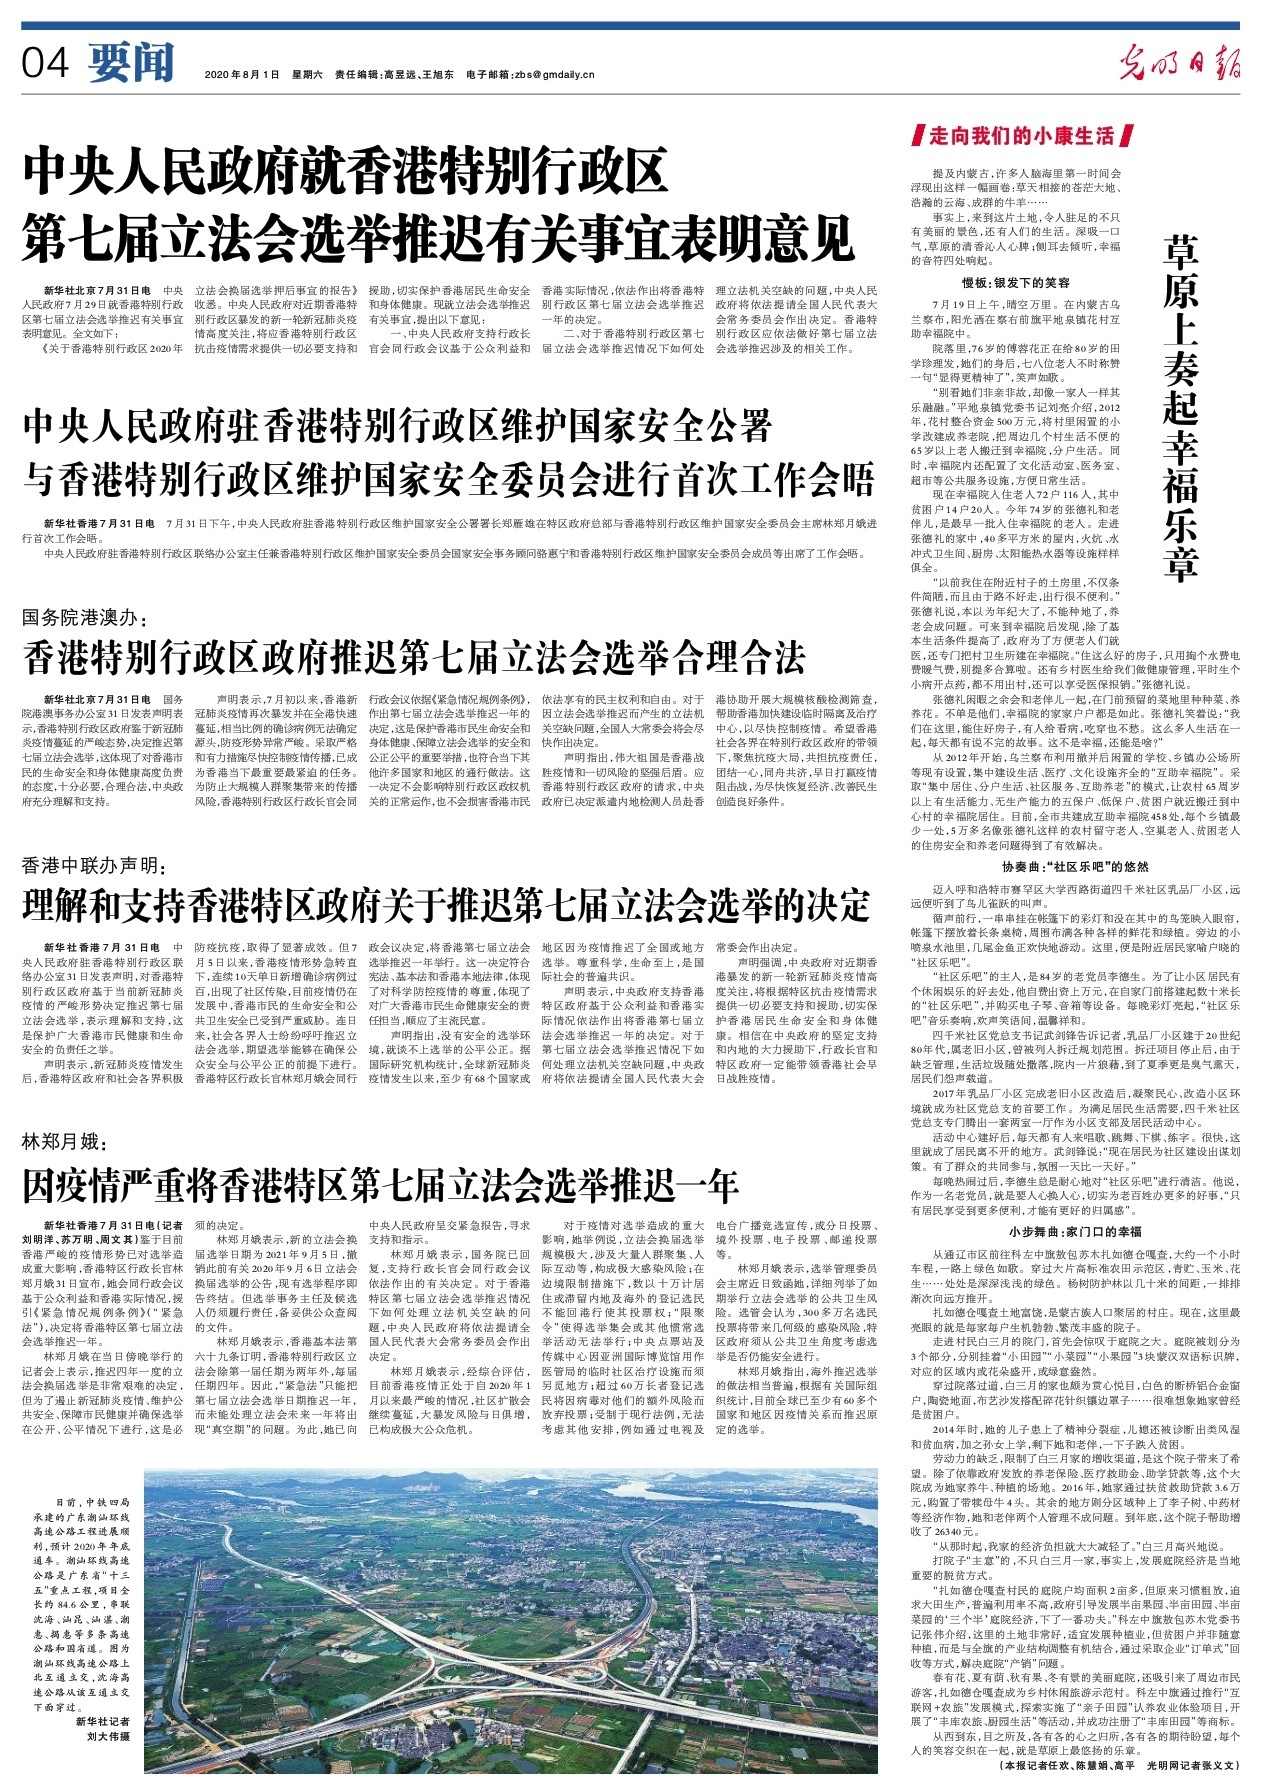 因疫情严重将香港特区第七届立法会选举推迟一年 光明日报 光明网